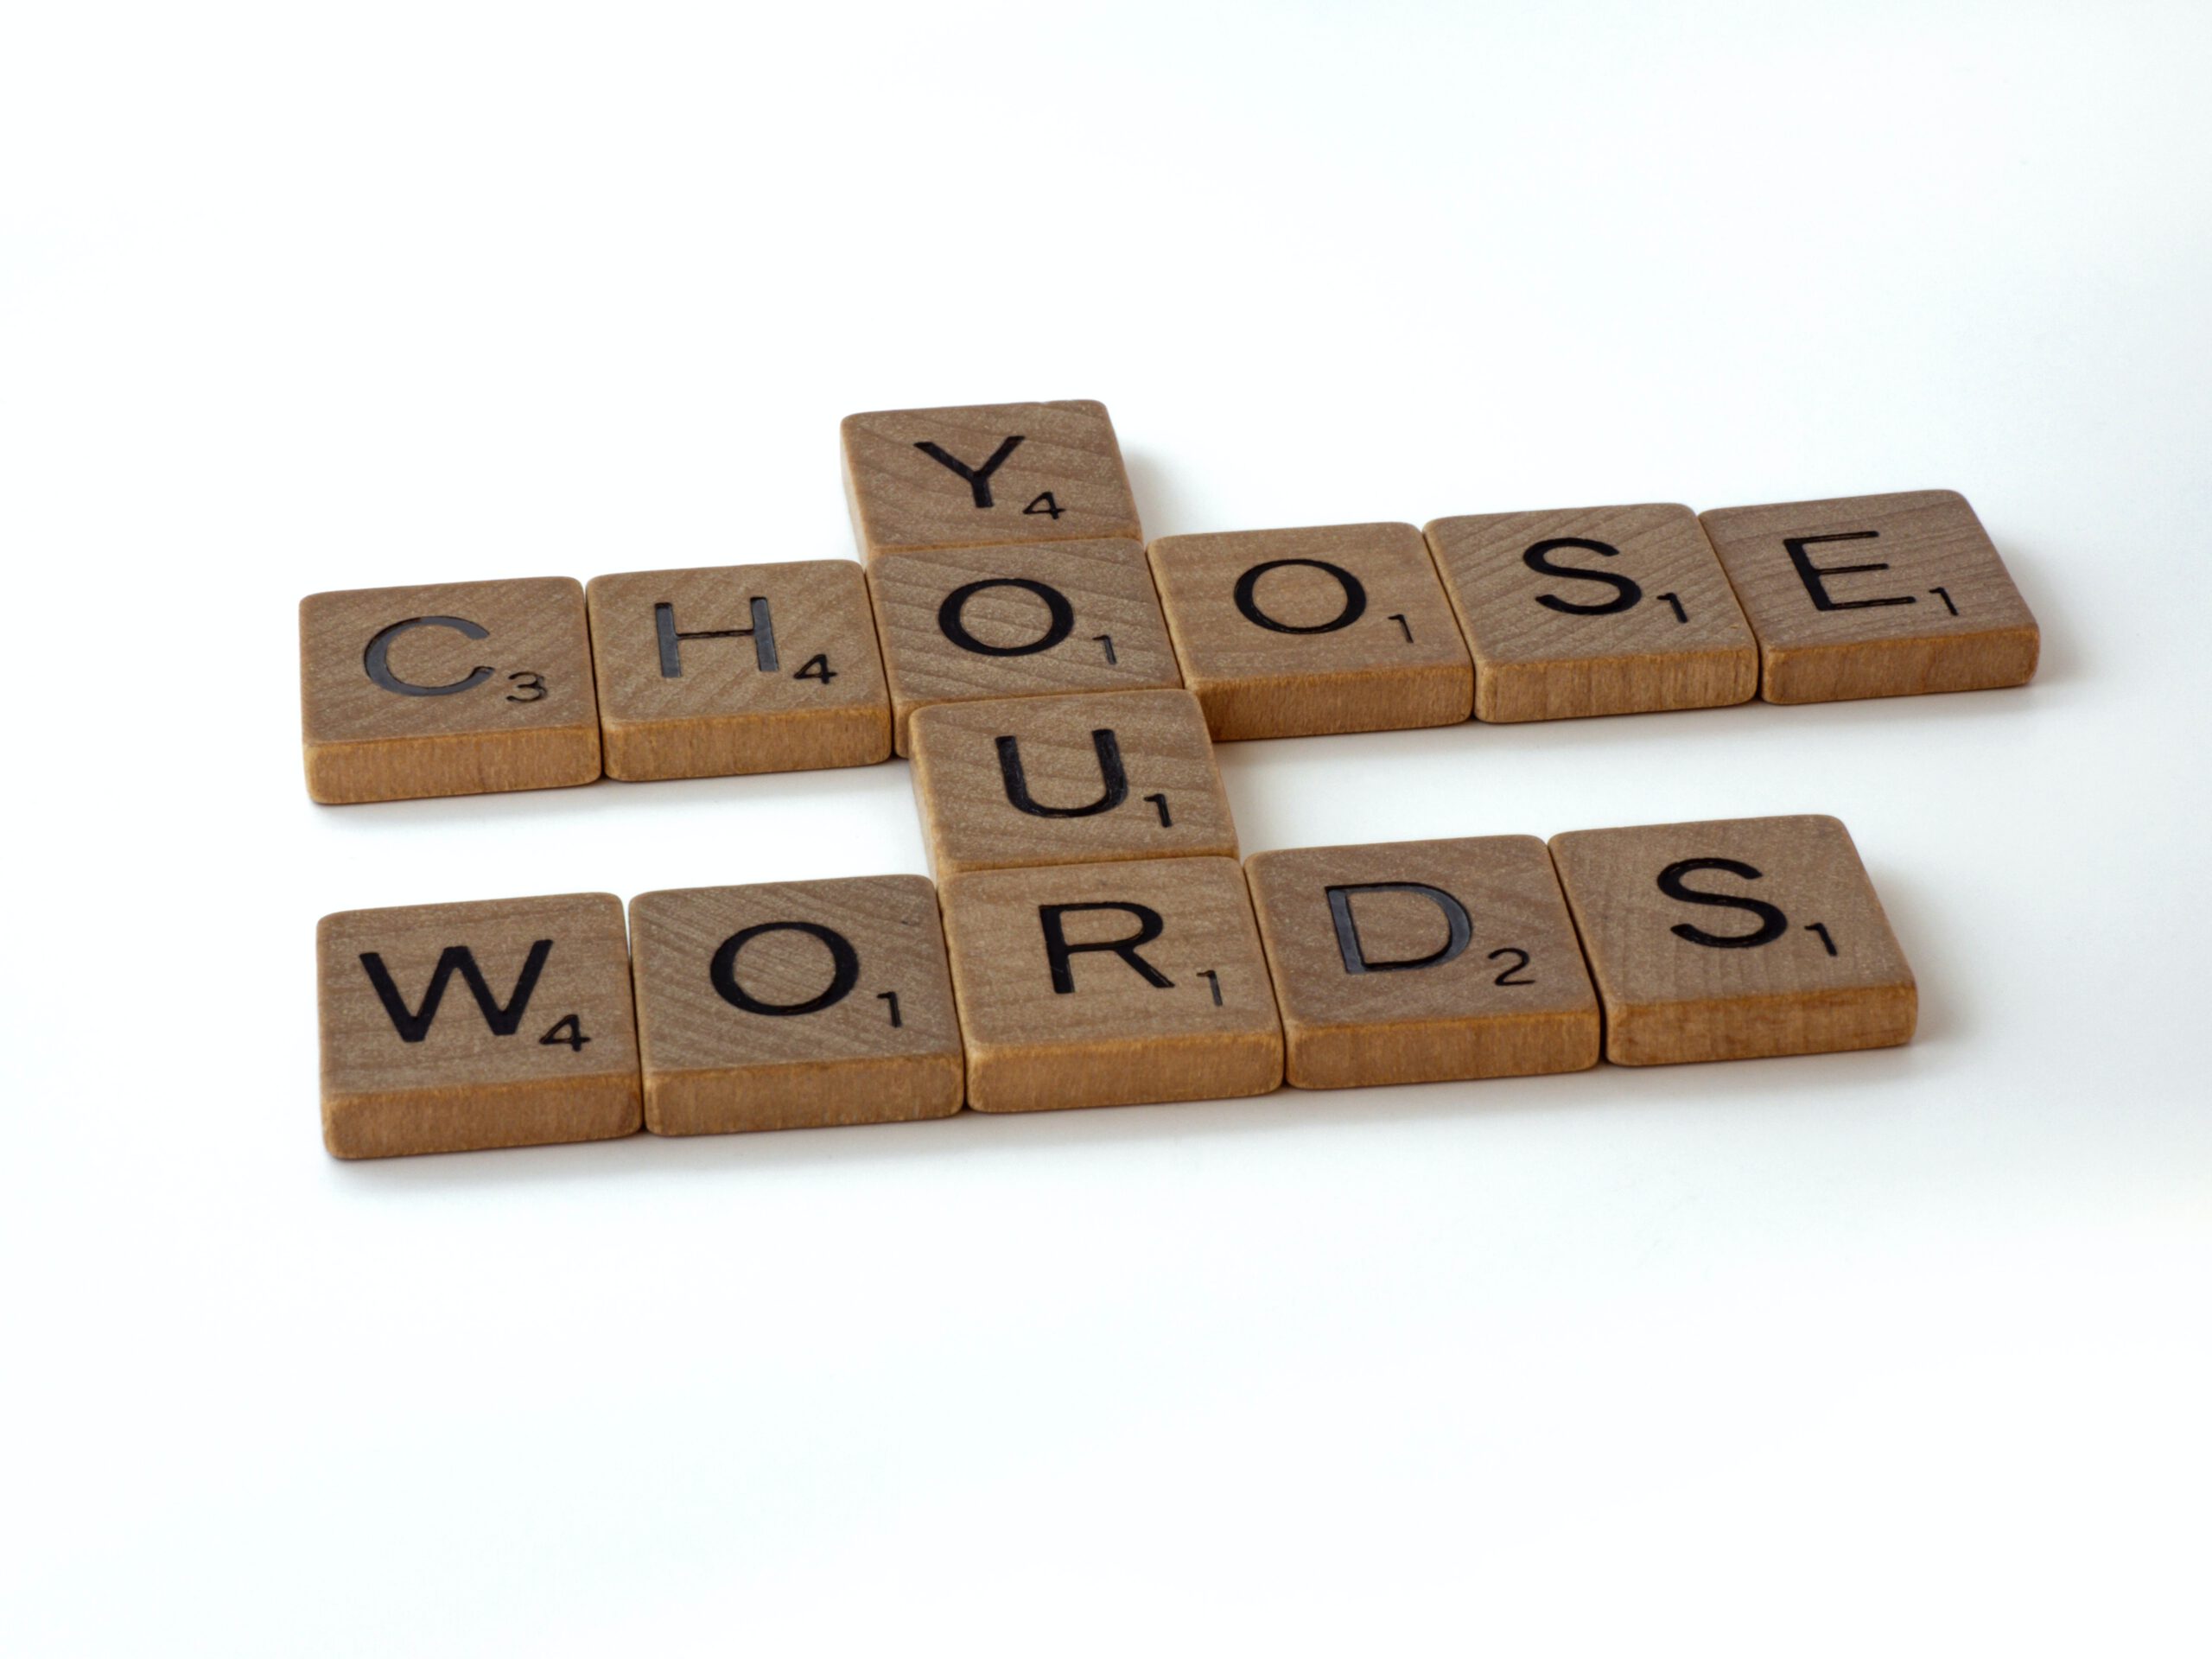 Aus Holz bestehendes Puzzleteile auf dem Buchstaben zu sehen sind. "Choose Your Words" ist auf dem Bild mit den Puzzleteilen zu lesen.